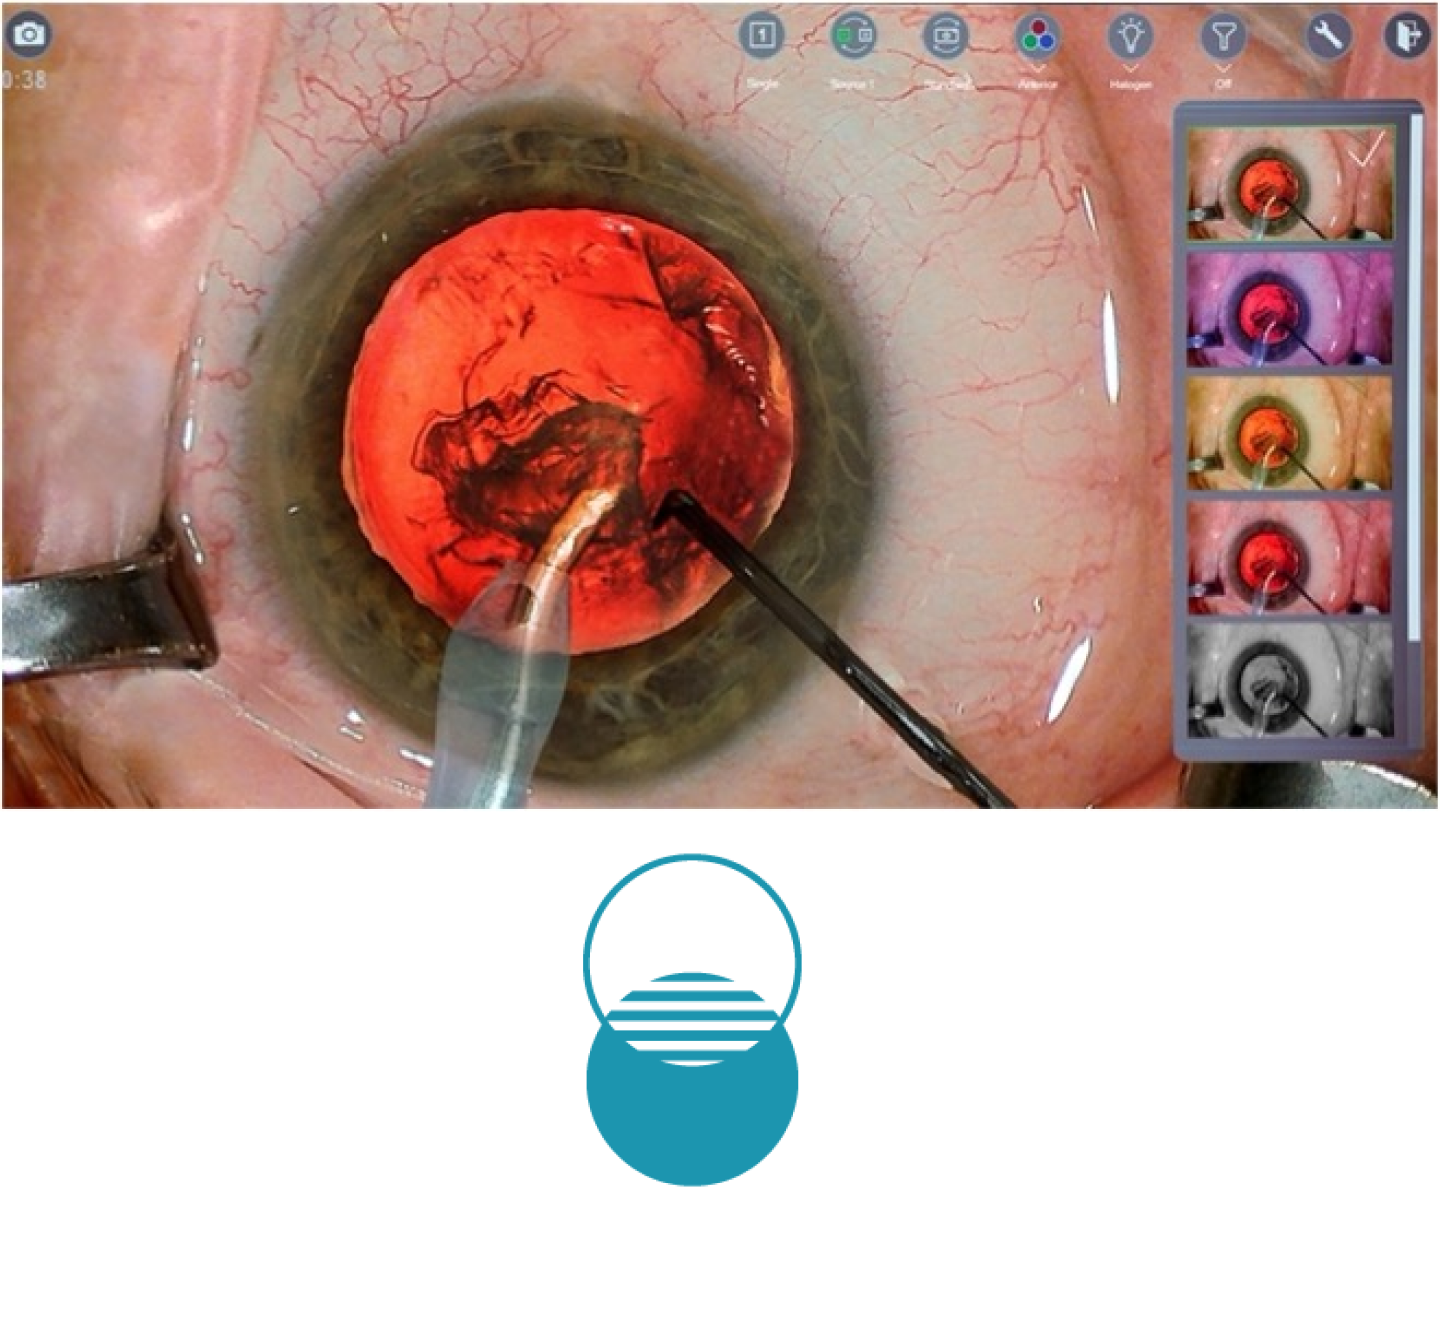 手術中の目のクローズアップ画像、画面には手術道具が表示されている。 画面右側のサムネイルには、NGENUITY 3Dビジュアリゼーションシステムで利用できる様々なカラーフィルターが表示されている